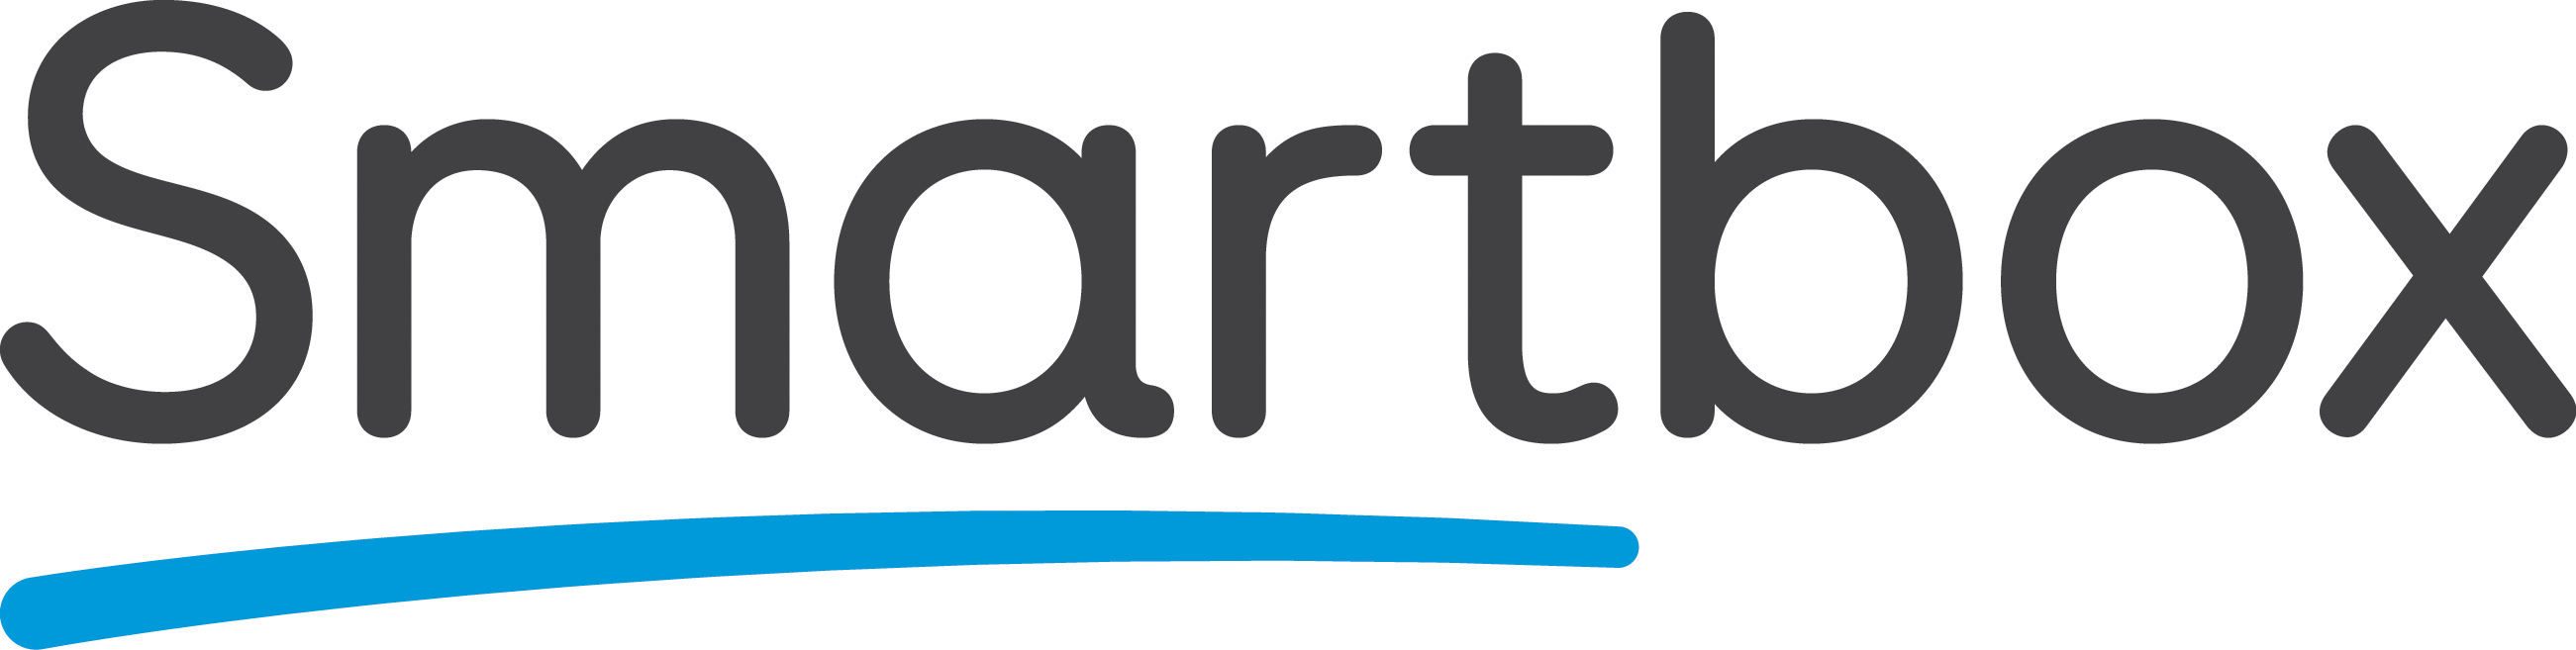 Smartbox, company logo